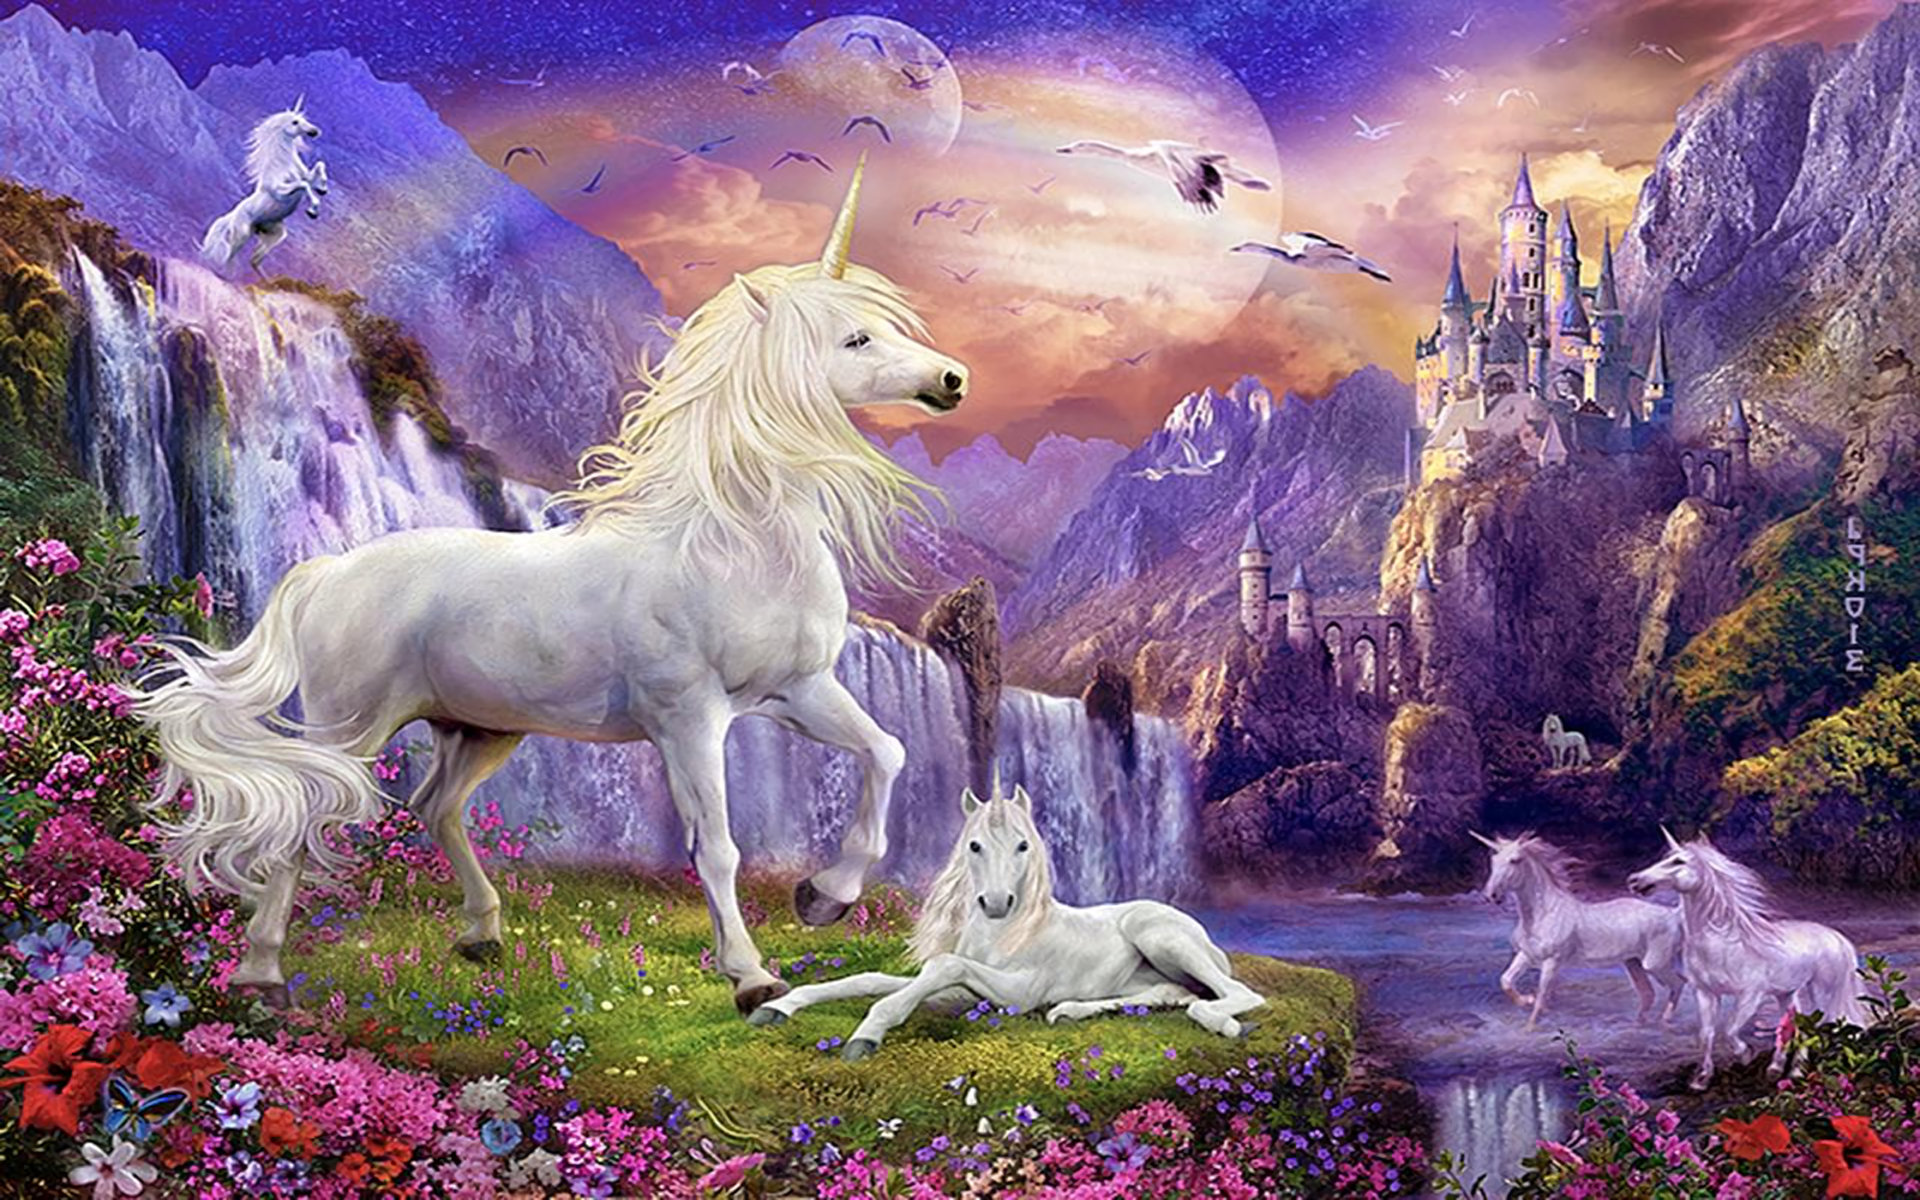 fondos de pantalla de unicornio hd,personaje de ficción,unicornio,criatura mítica,mitología,pintura